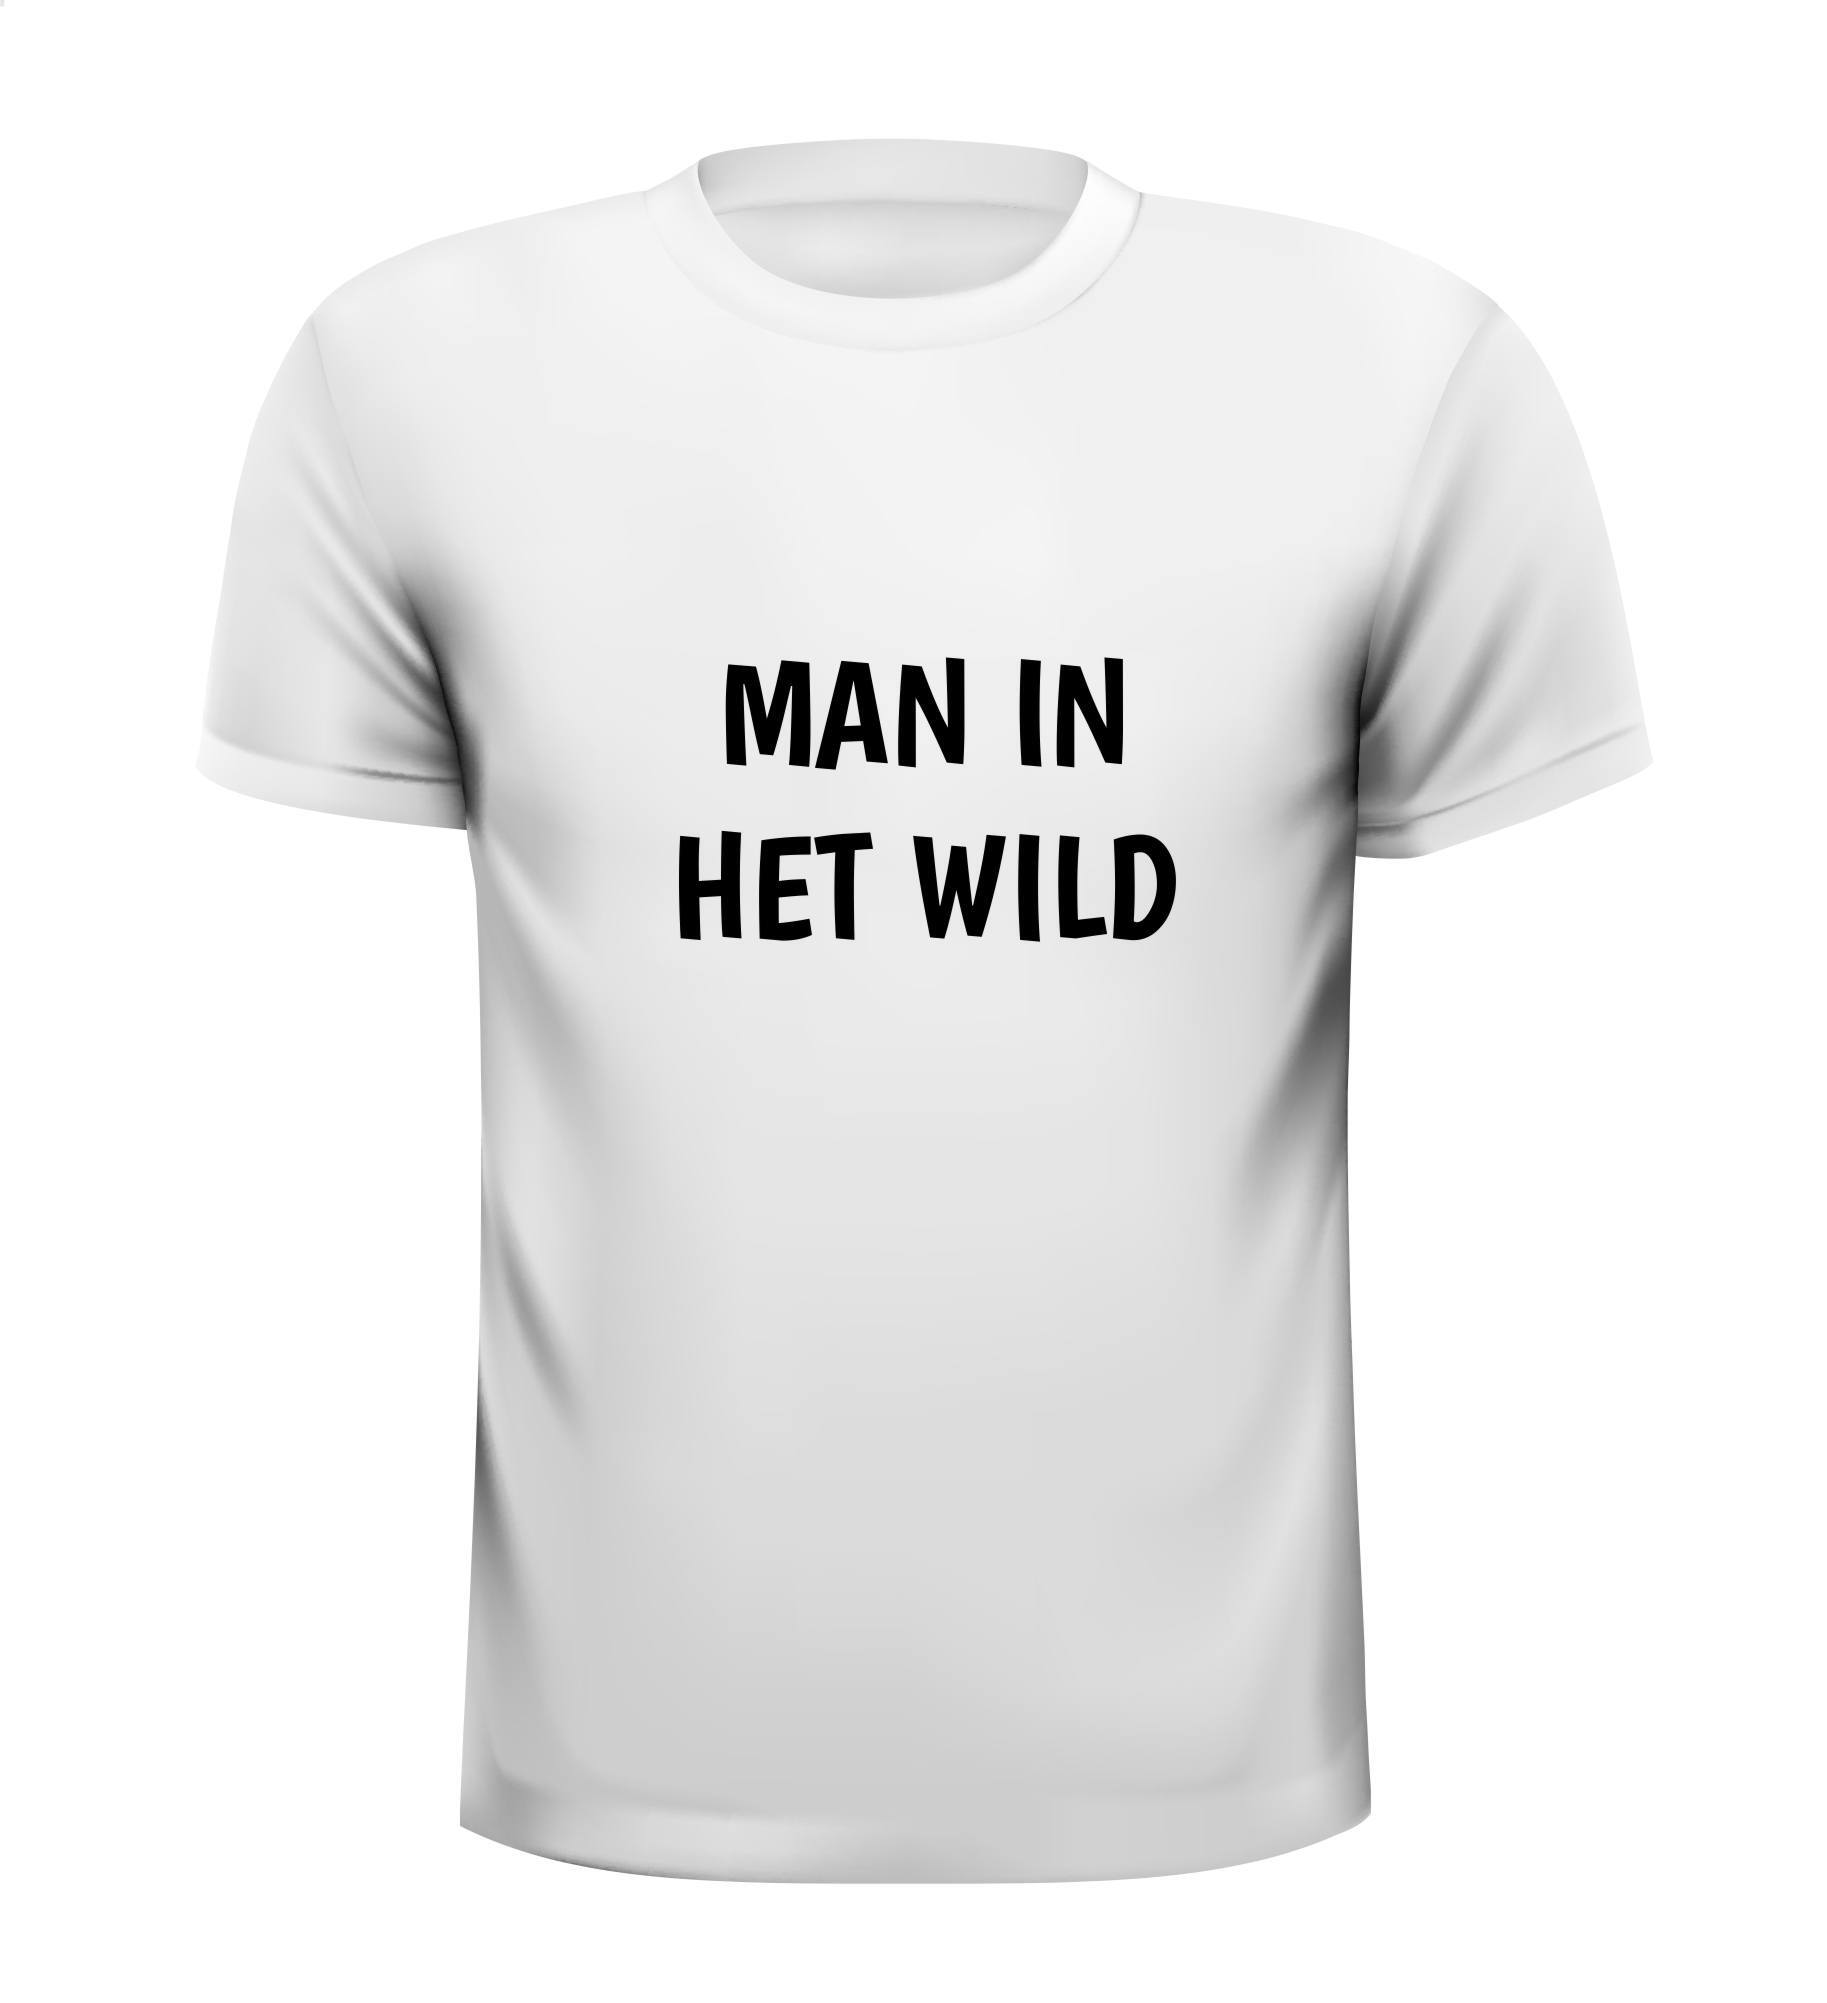 Tot ziens gijzelaar Krachtig Man in het wild T-shirt tekst voor stoere mannen